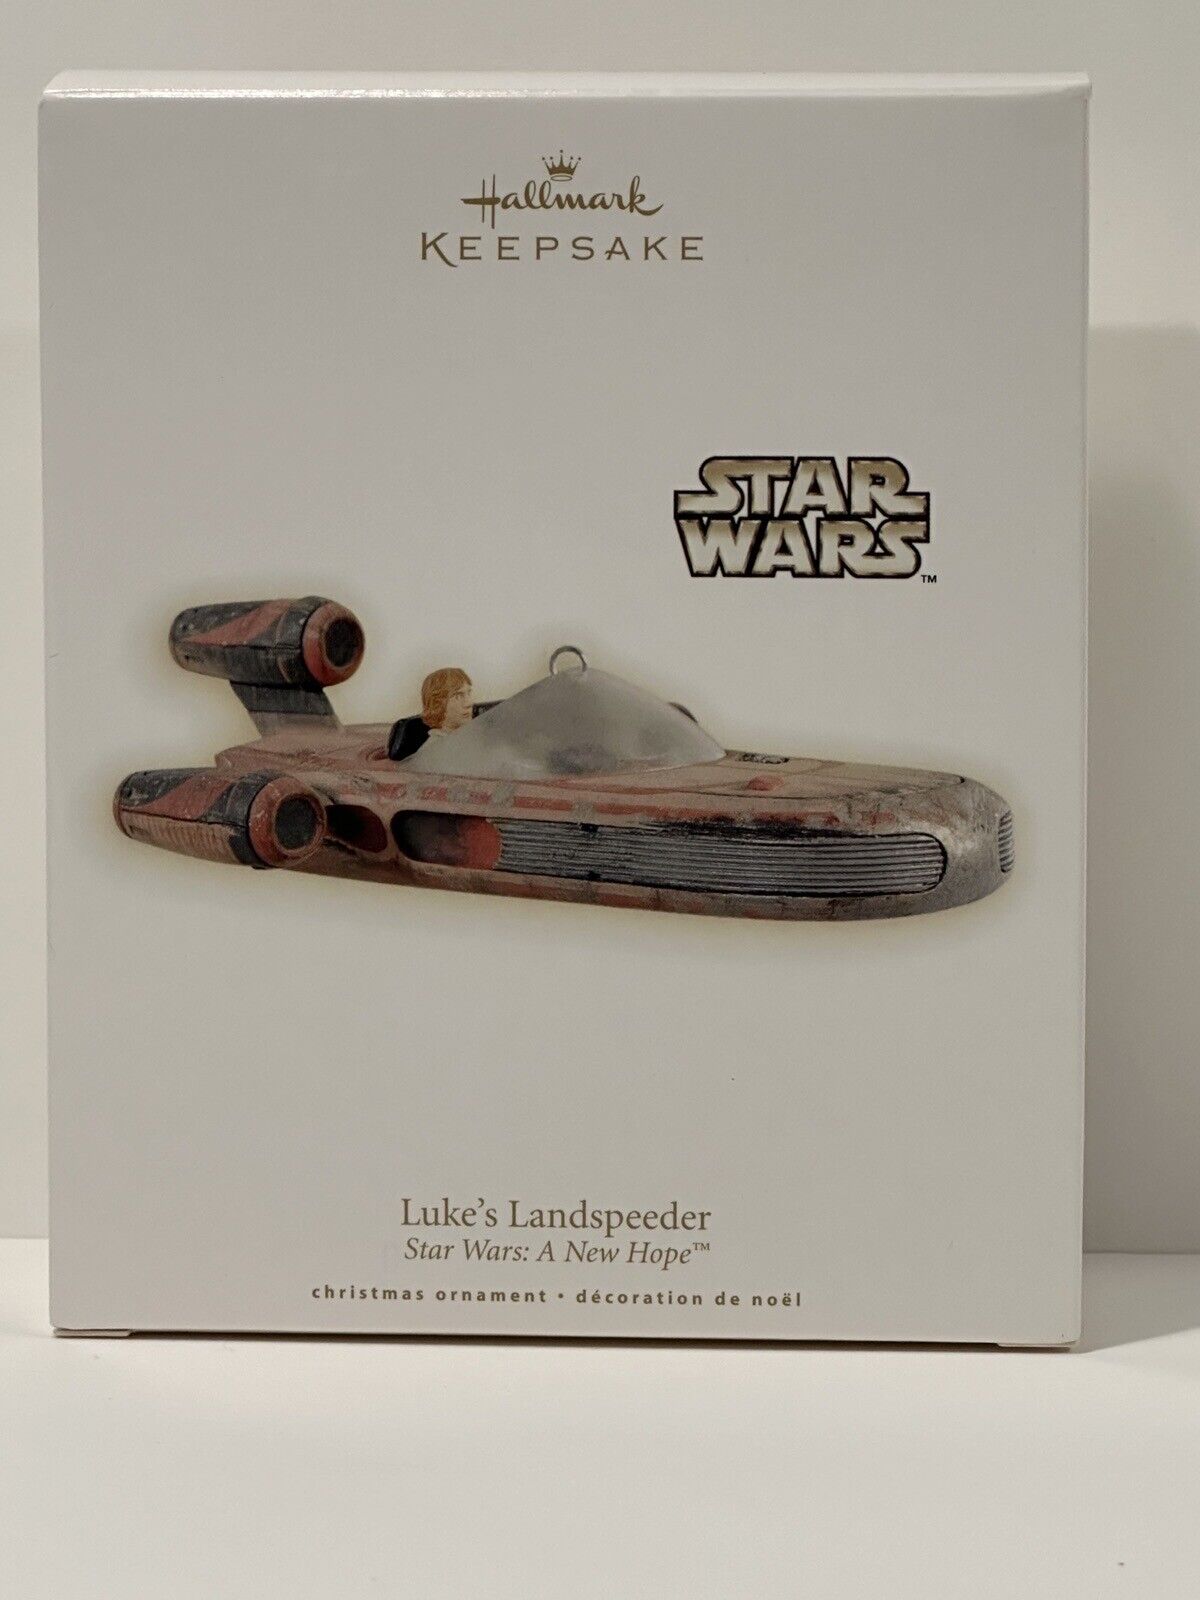 2009 Hallmark Keepsake Star Wars A New Hope Luke's Landspeeder Ornament *NIB*